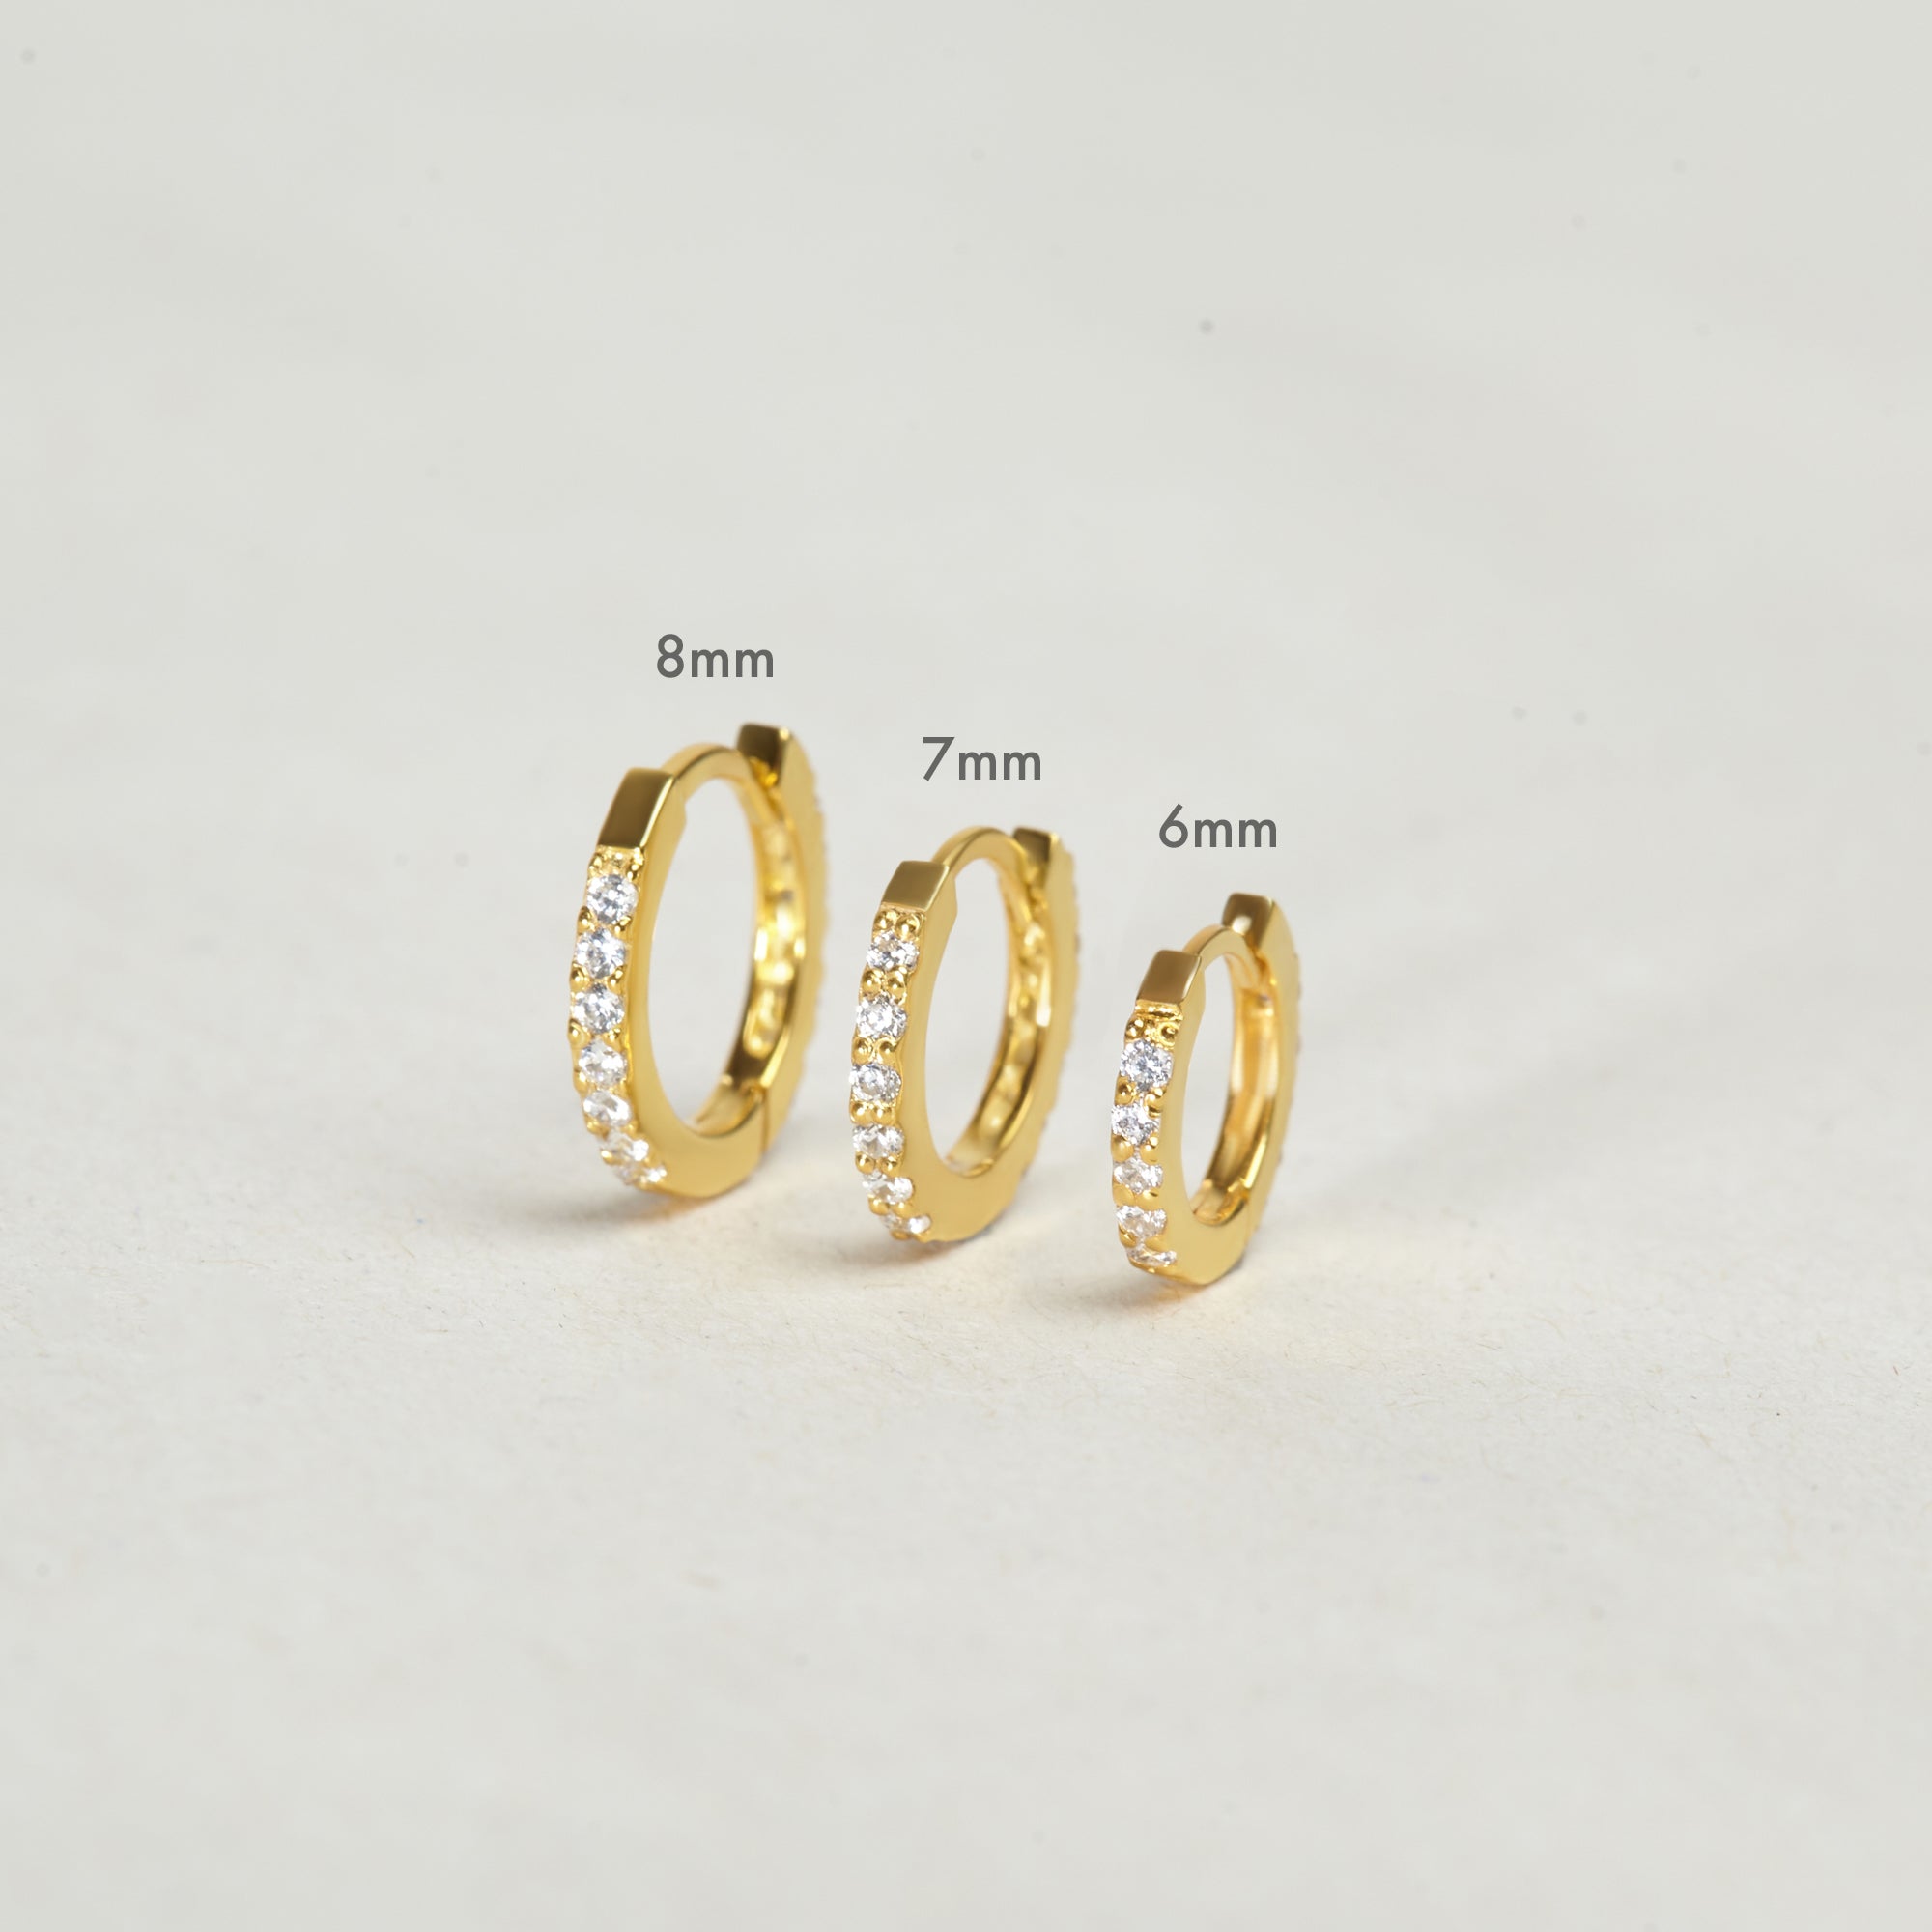 Handmade 925 Sterling Silver Hoops - Gold Plated, 6-8mm Diameter - Earrings - Bijou Her -  -  - 